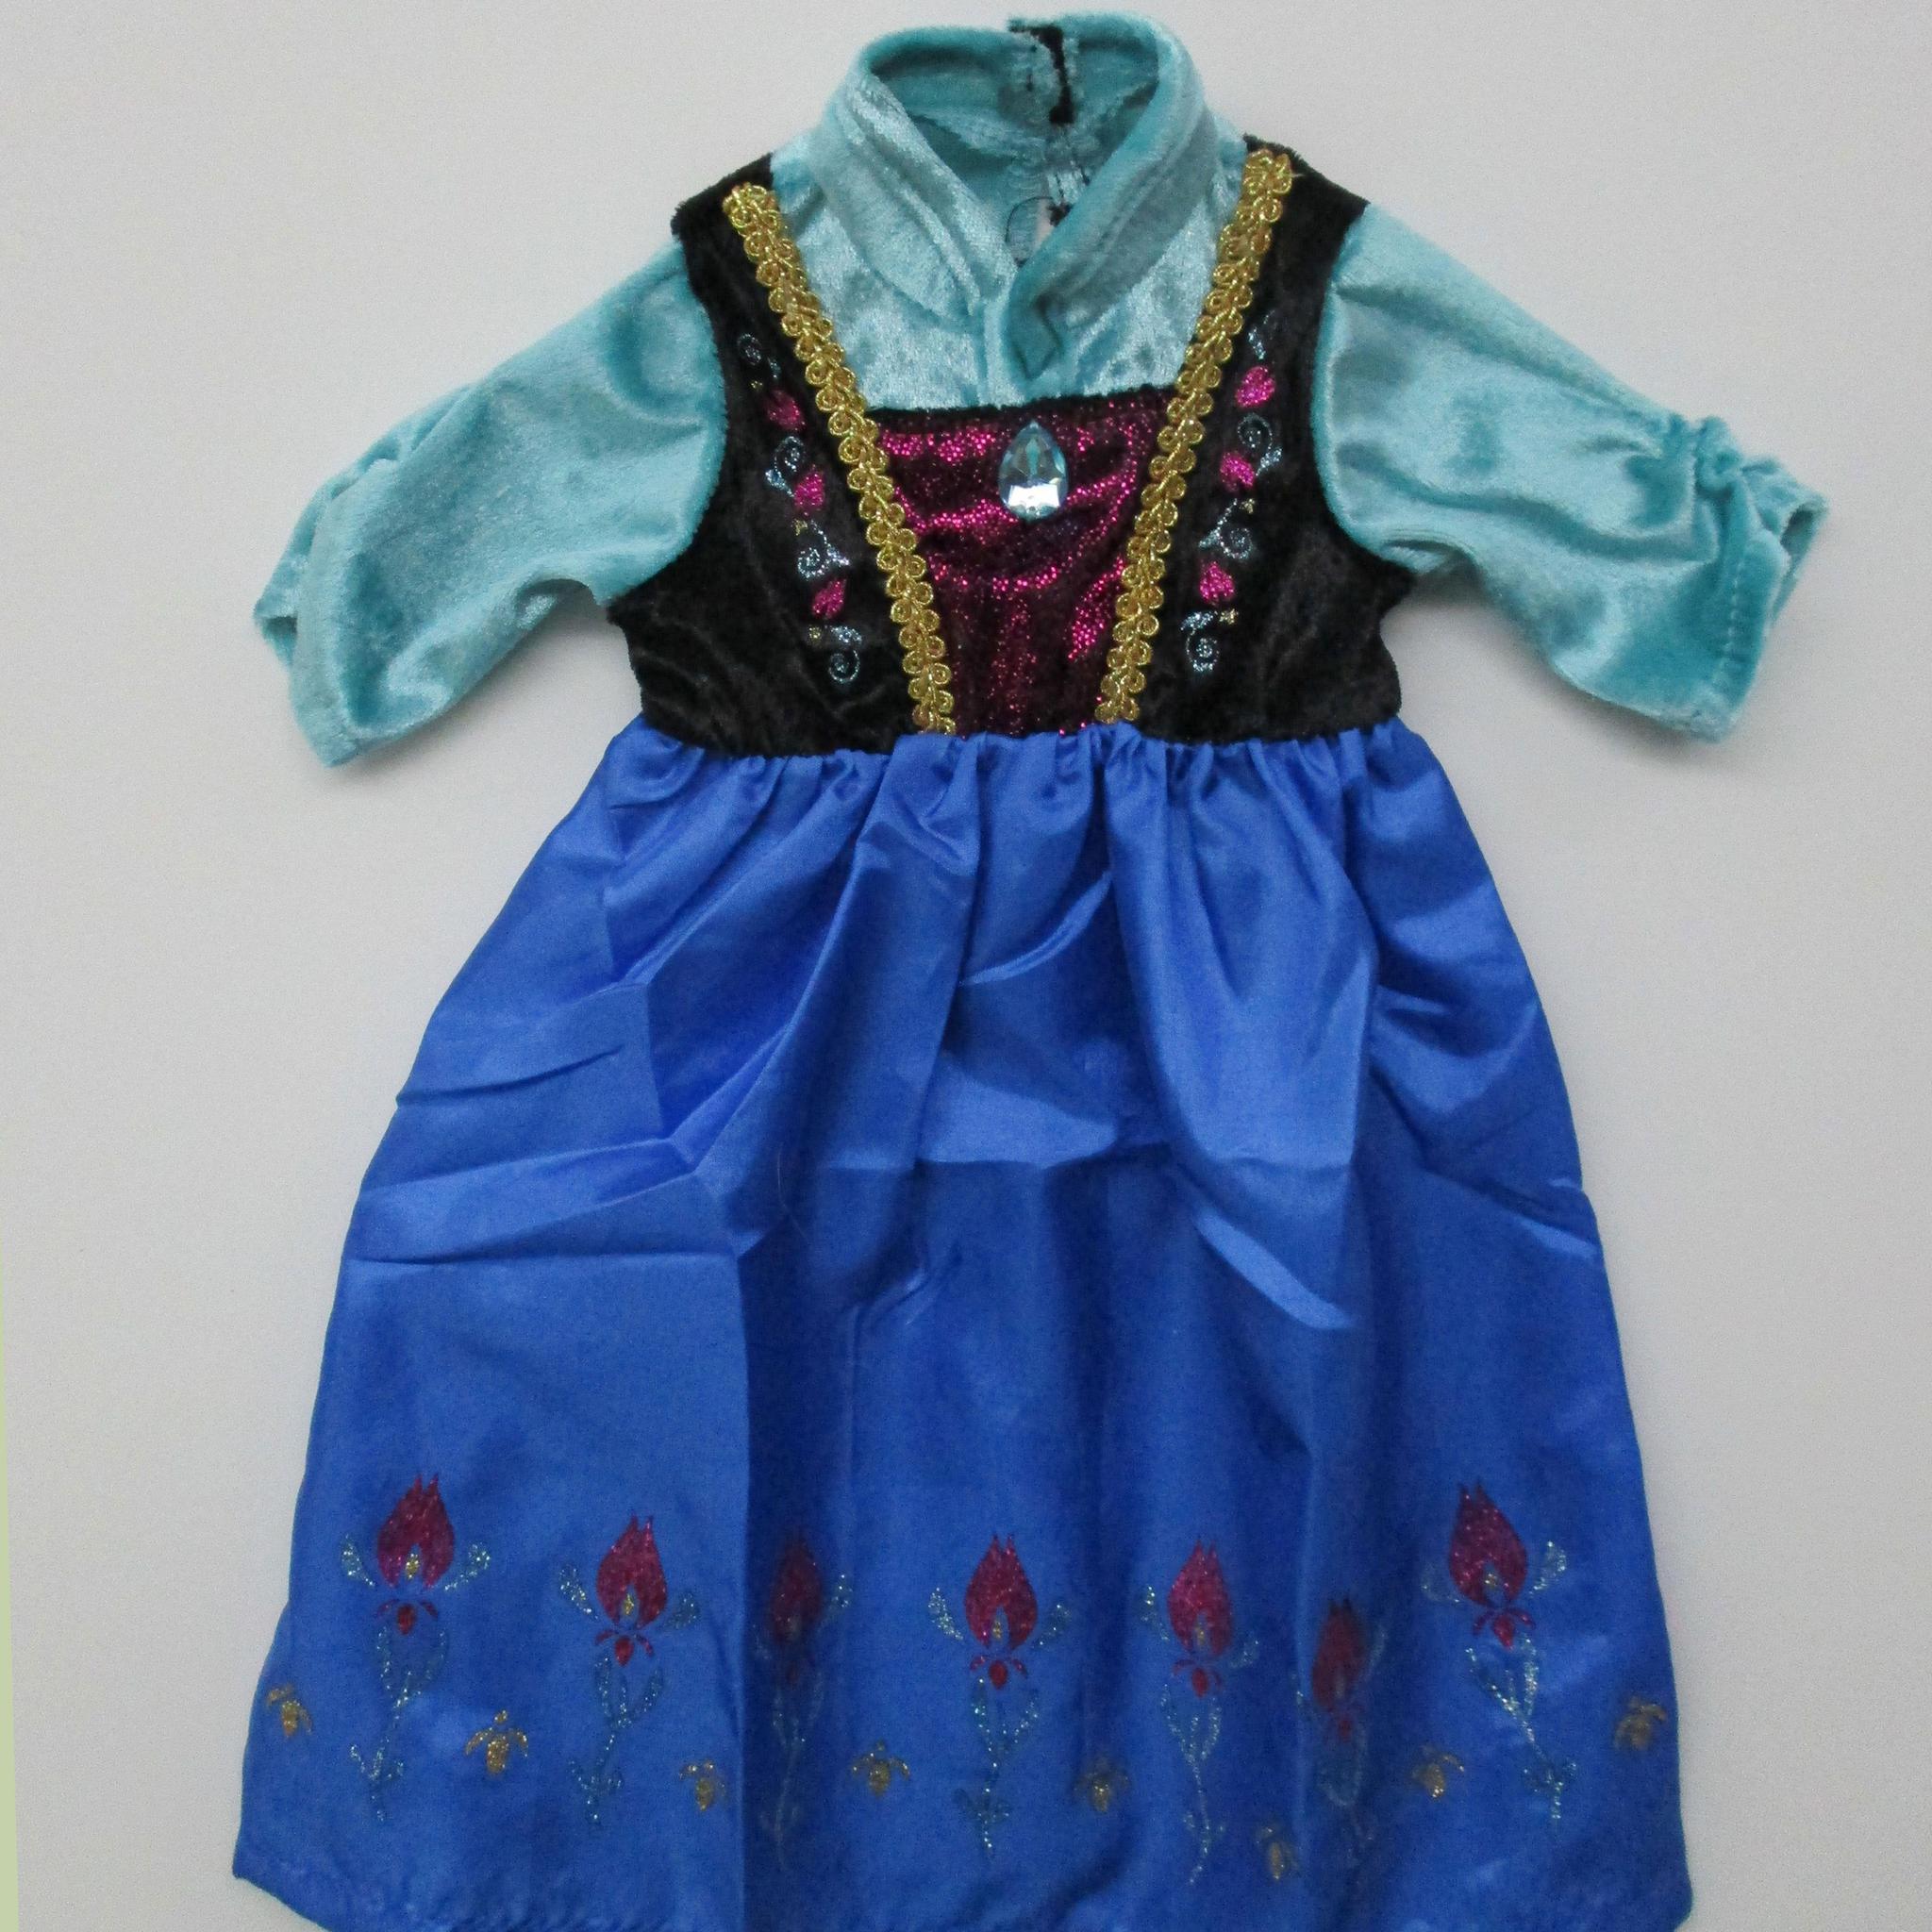 Lil Doll Dress Alpine Princess Fits 16-20"